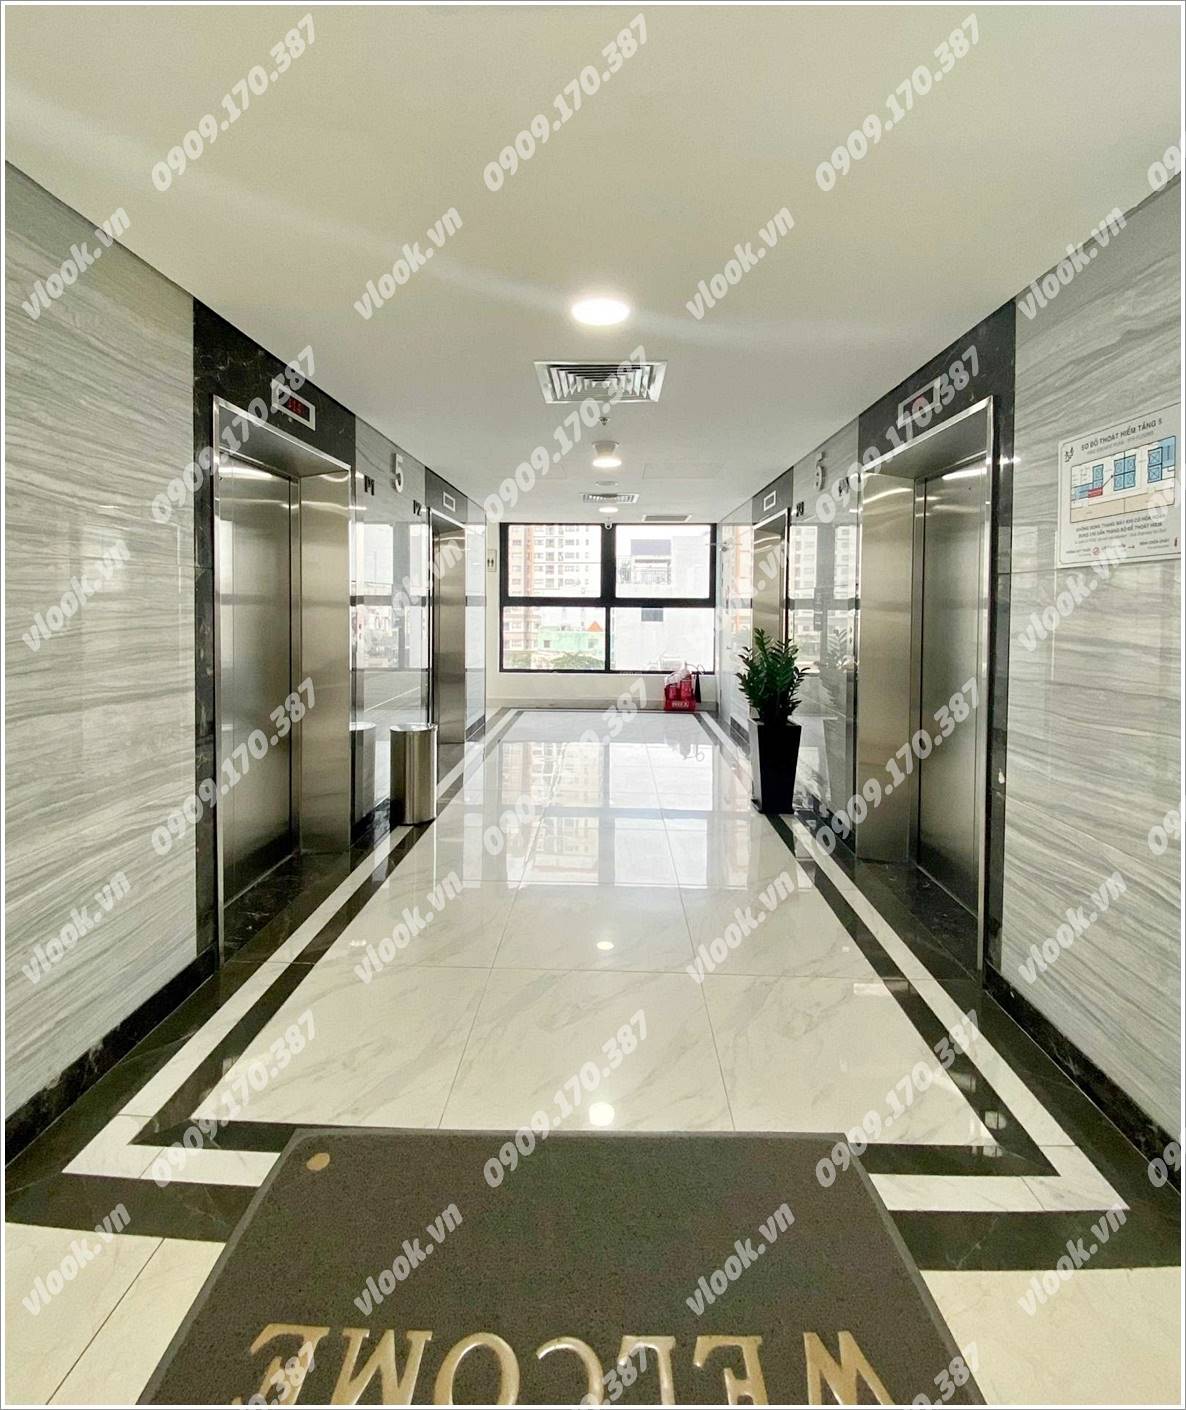 Cao ốc văn phòng cho thuê tòa nhà 152 Điện Biên Phủ, Quận Bình Thạnh, TP.HCM - vlook.vn